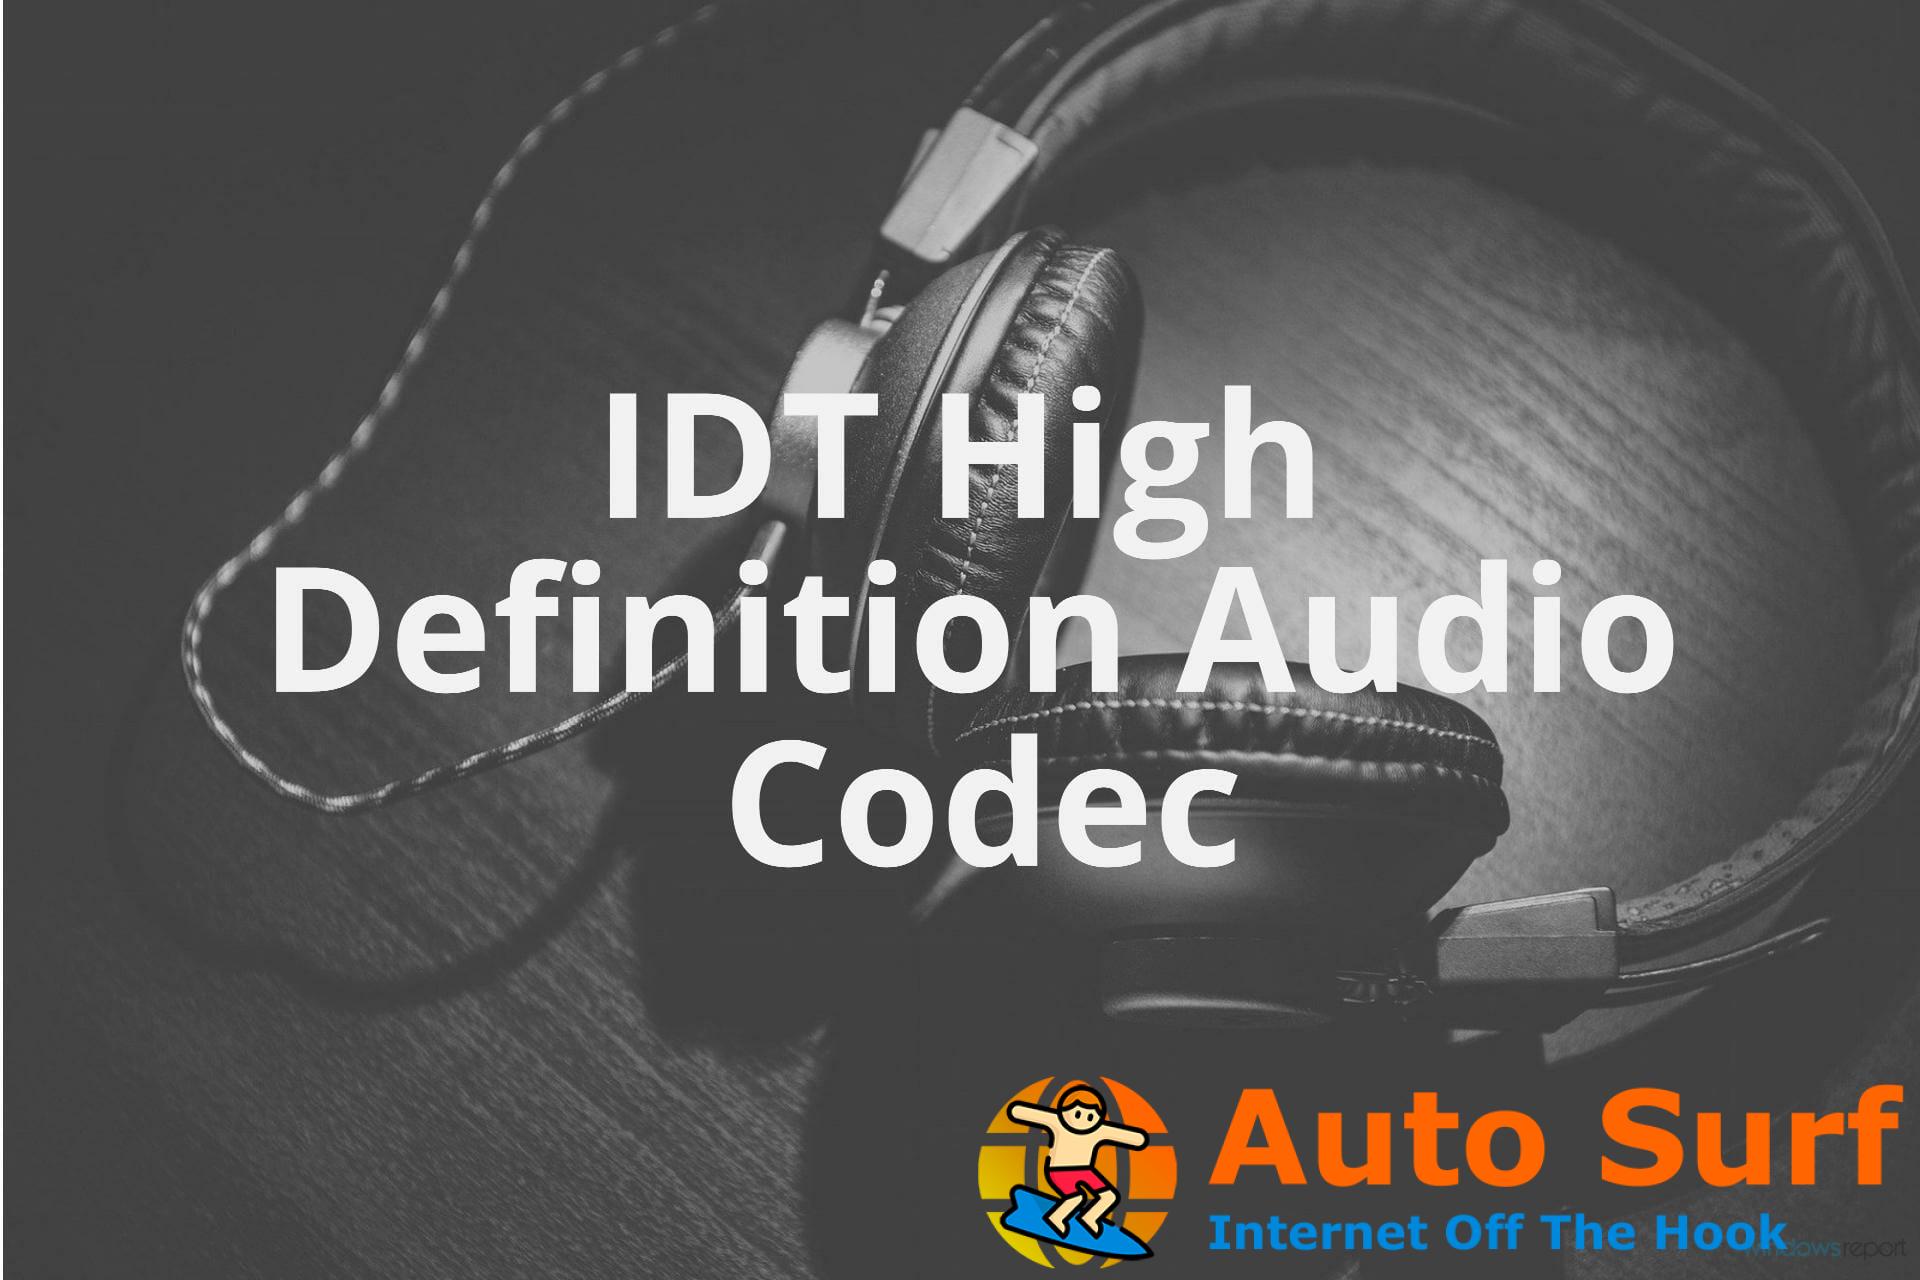 Arreglar el códec de audio de alta definición idt tiene un problema con el controlador